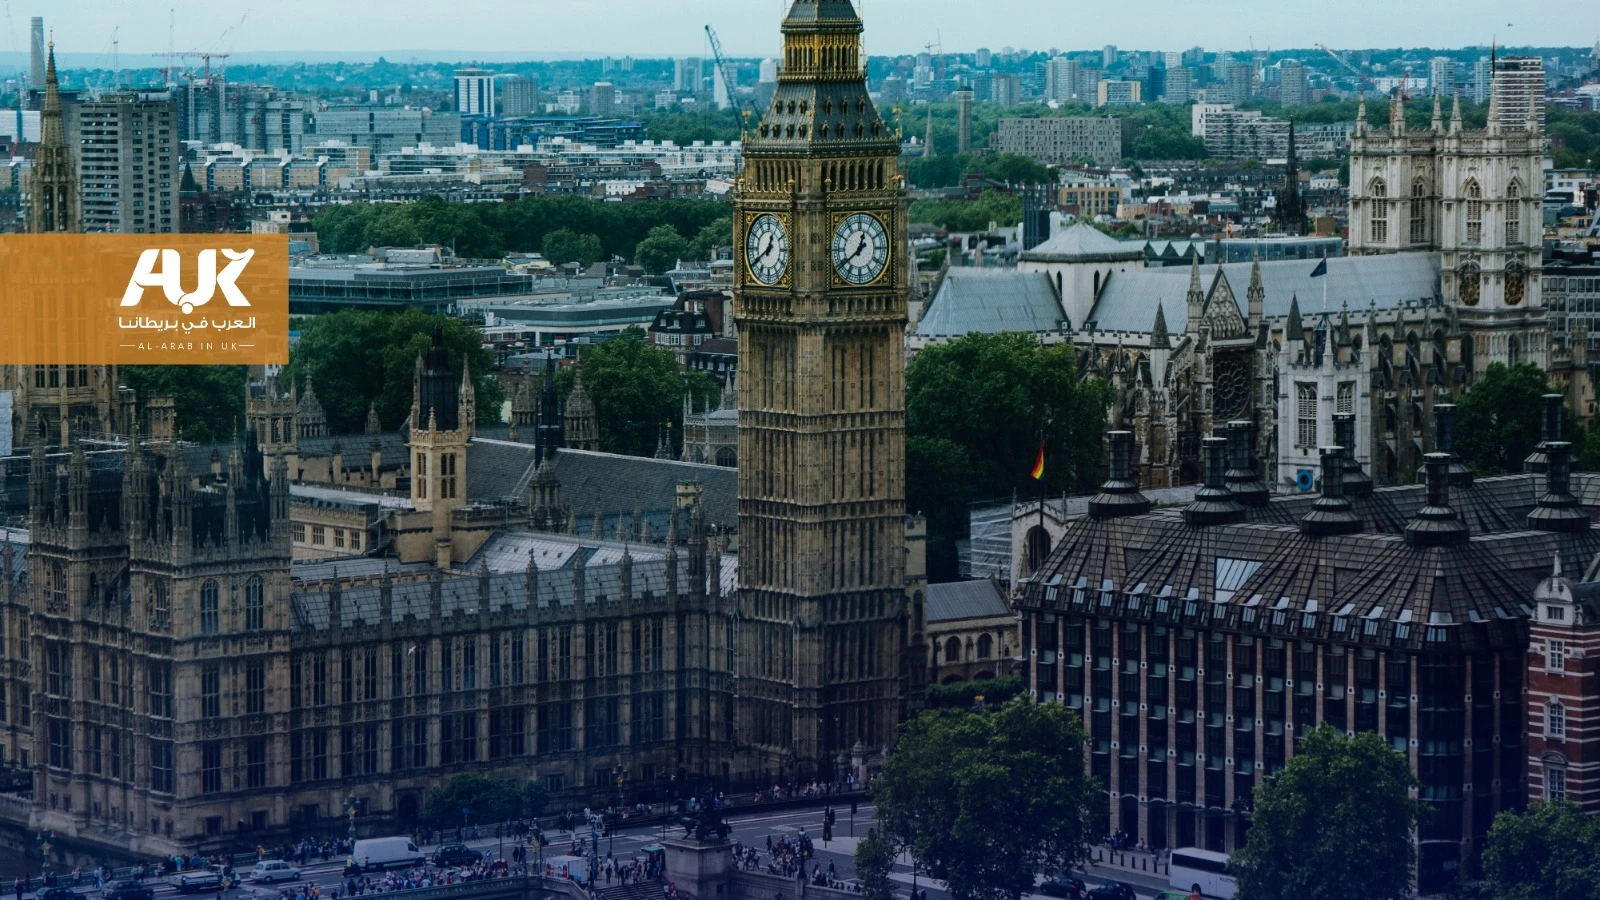 كيف يدار مجلس لندن التشريعي وما أبرز مهامه؟